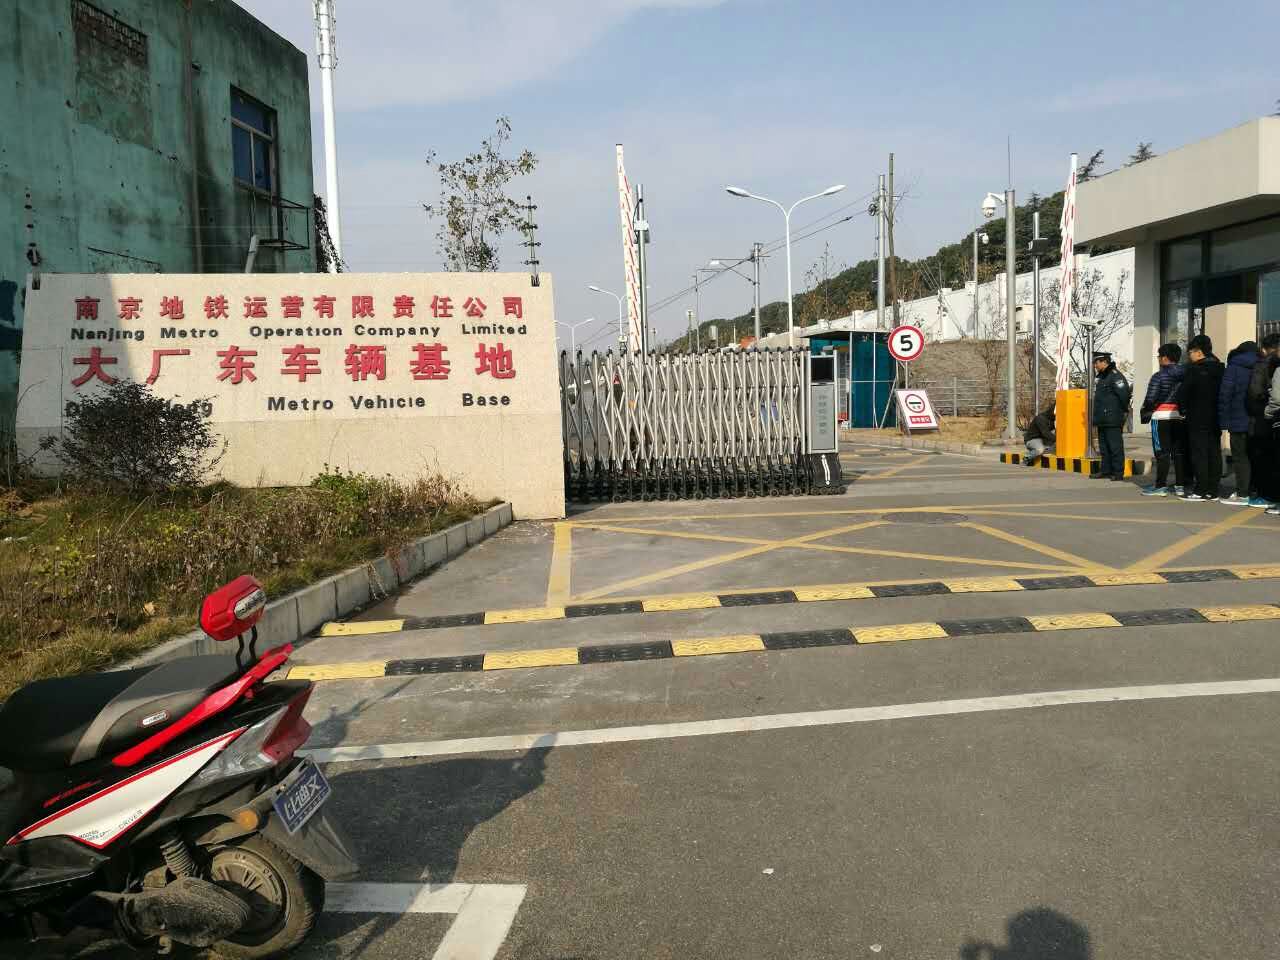 南京地鐵運營有限責任公司大廠東車輛基地正式啟用科世達訪客機